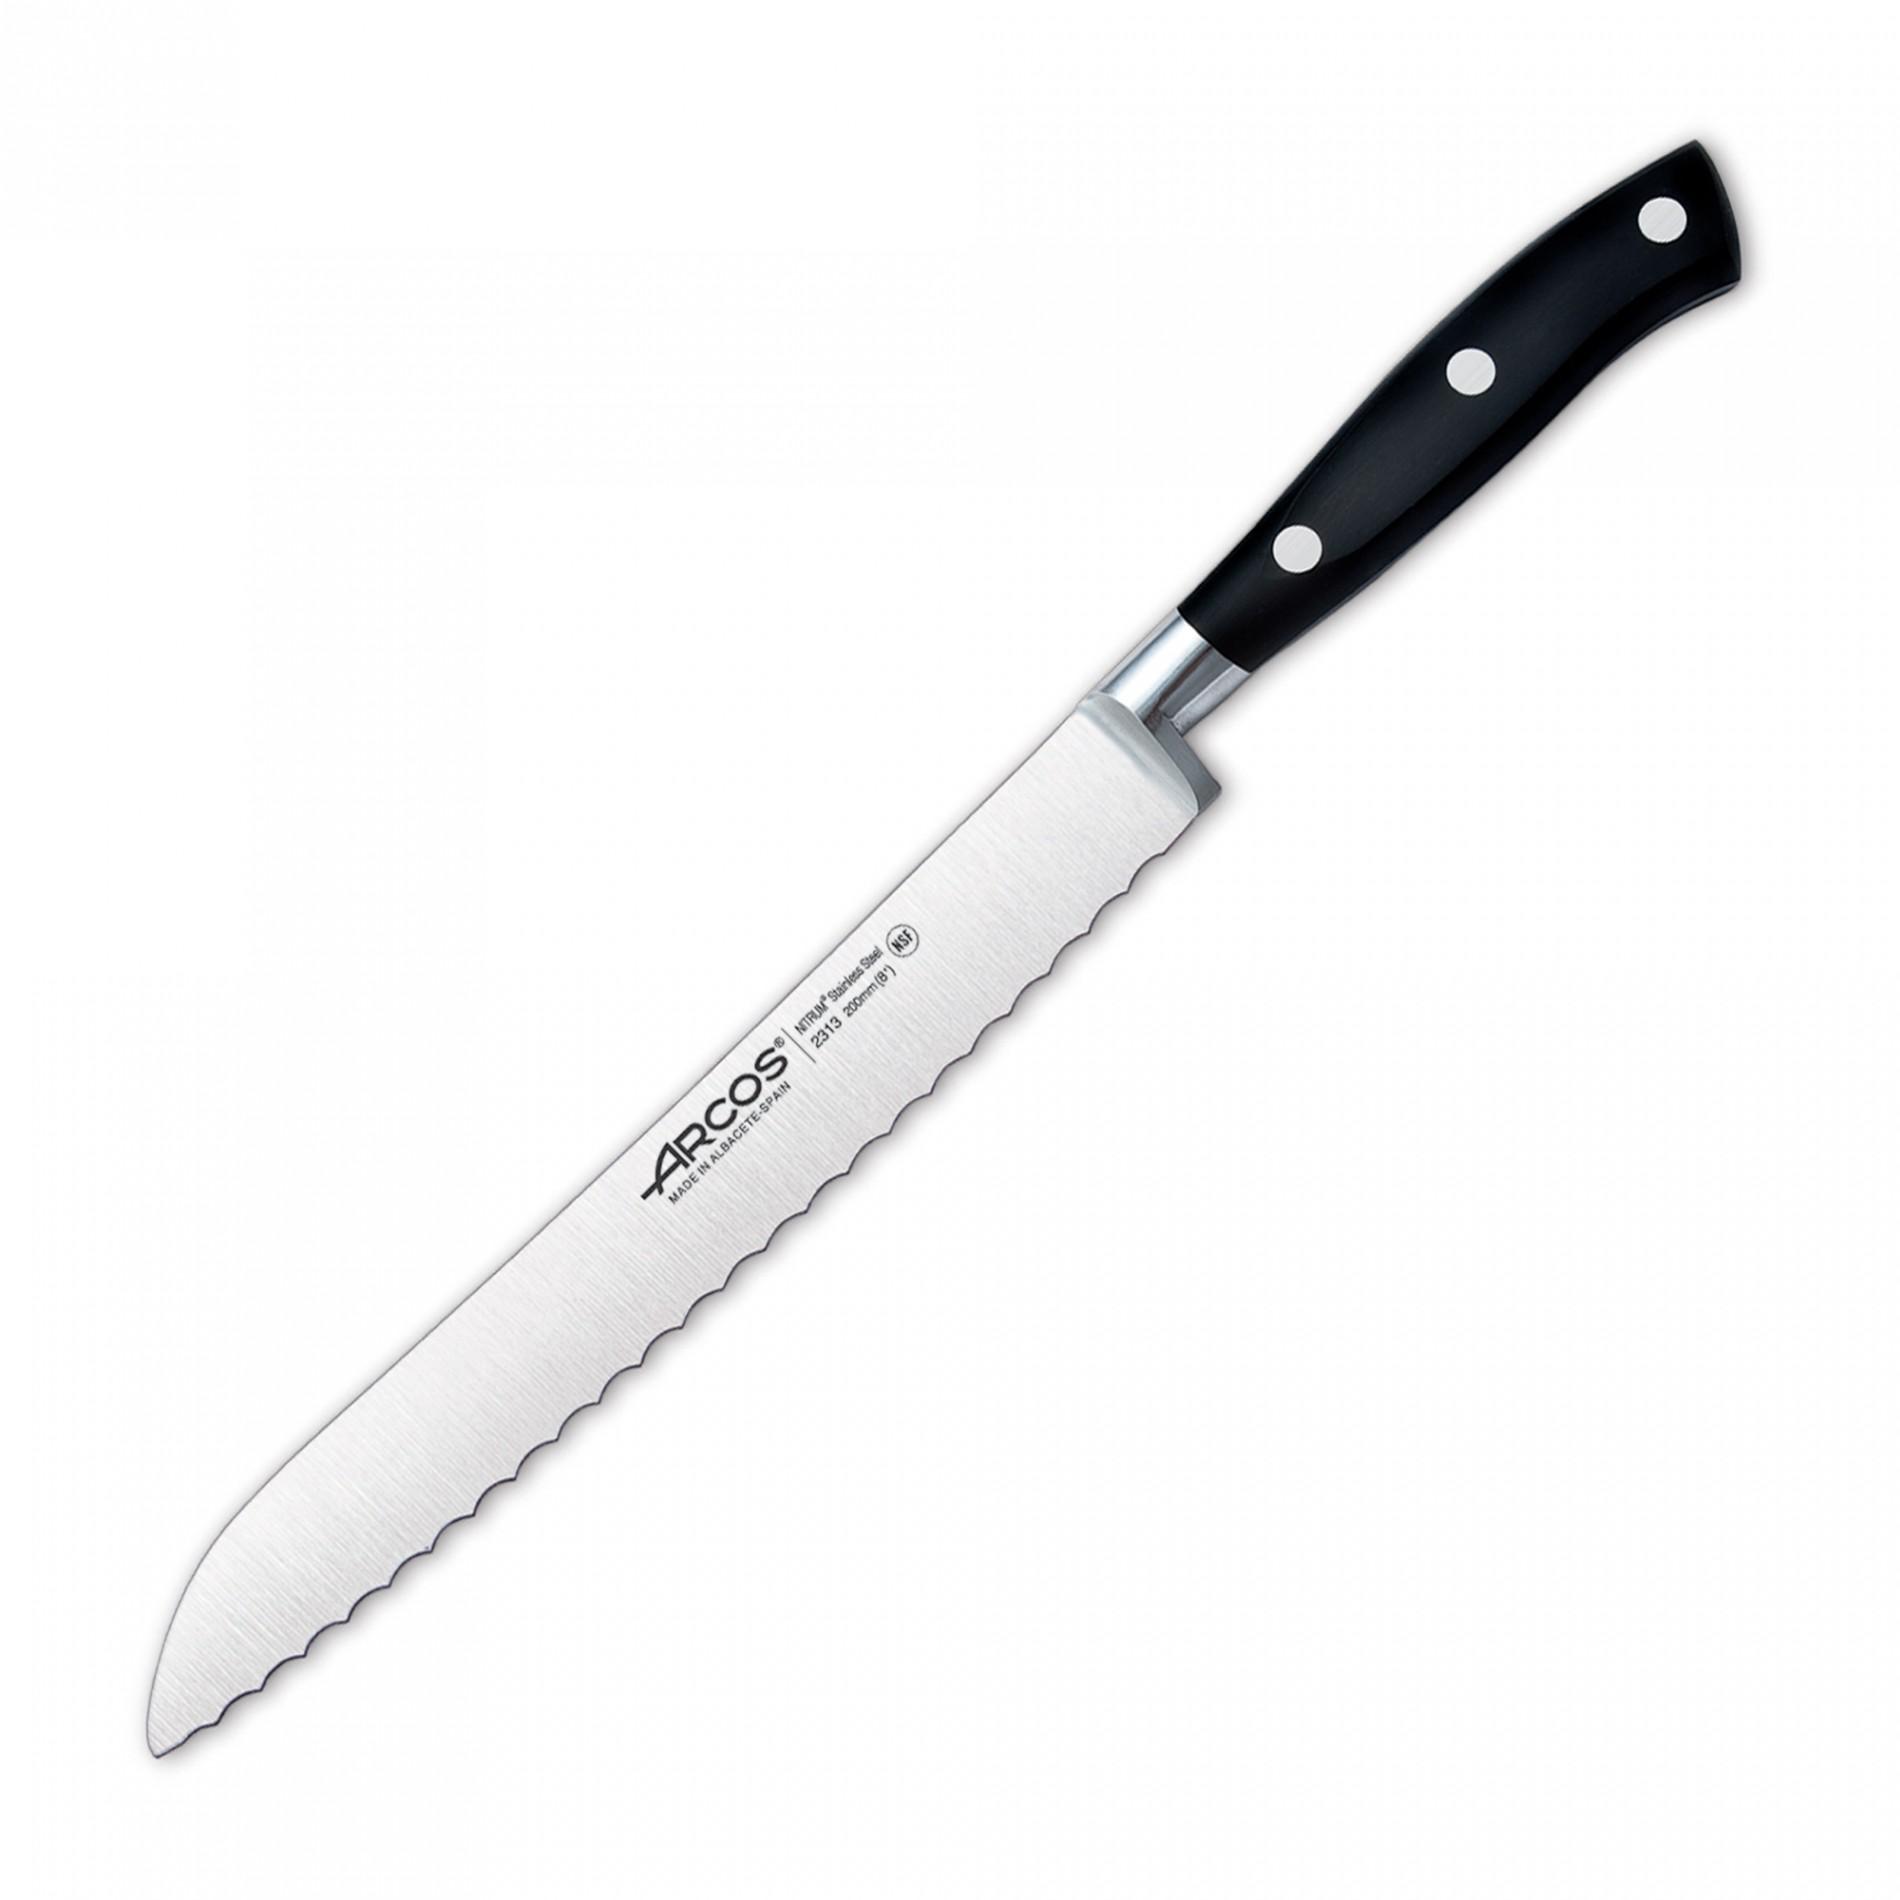 Кухонные ножи 20 см. Нож Аркос. Поварские ножи Аркос. Arcos нож поварской 25 cm. Нож Arcos Universal.